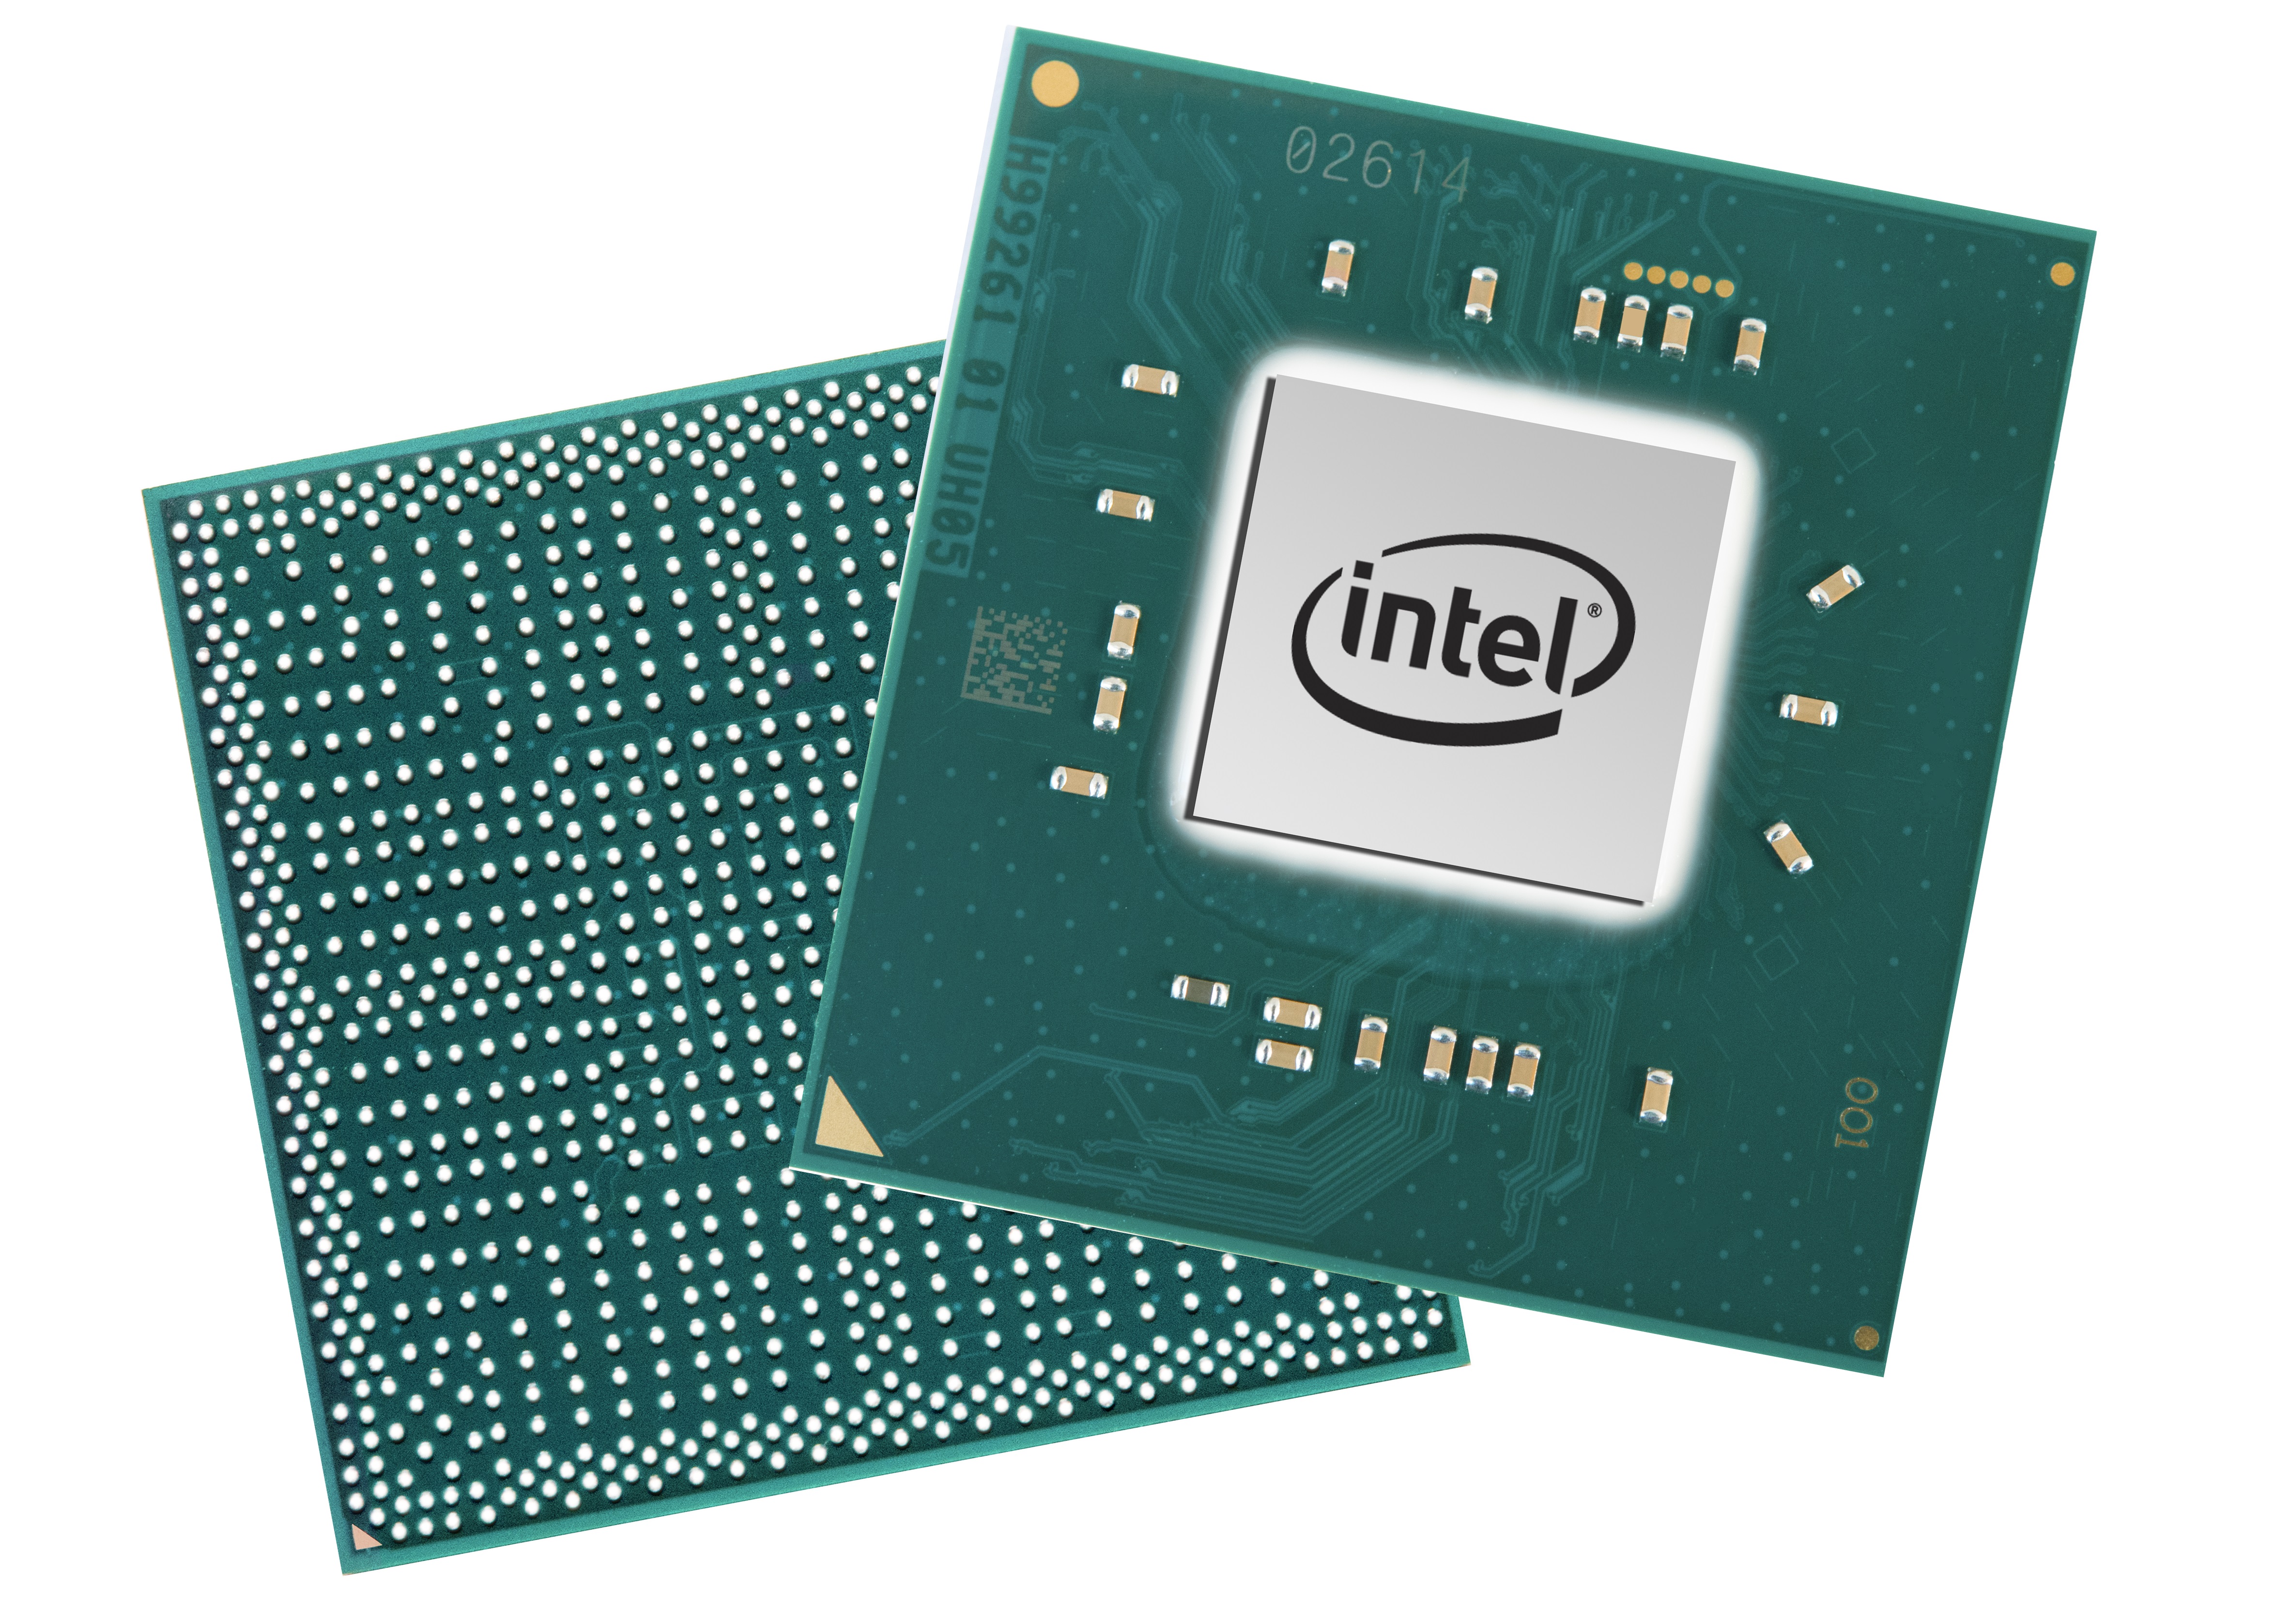 Intel Uhd Graphics 600 Gpu Notebookcheck Net Tech